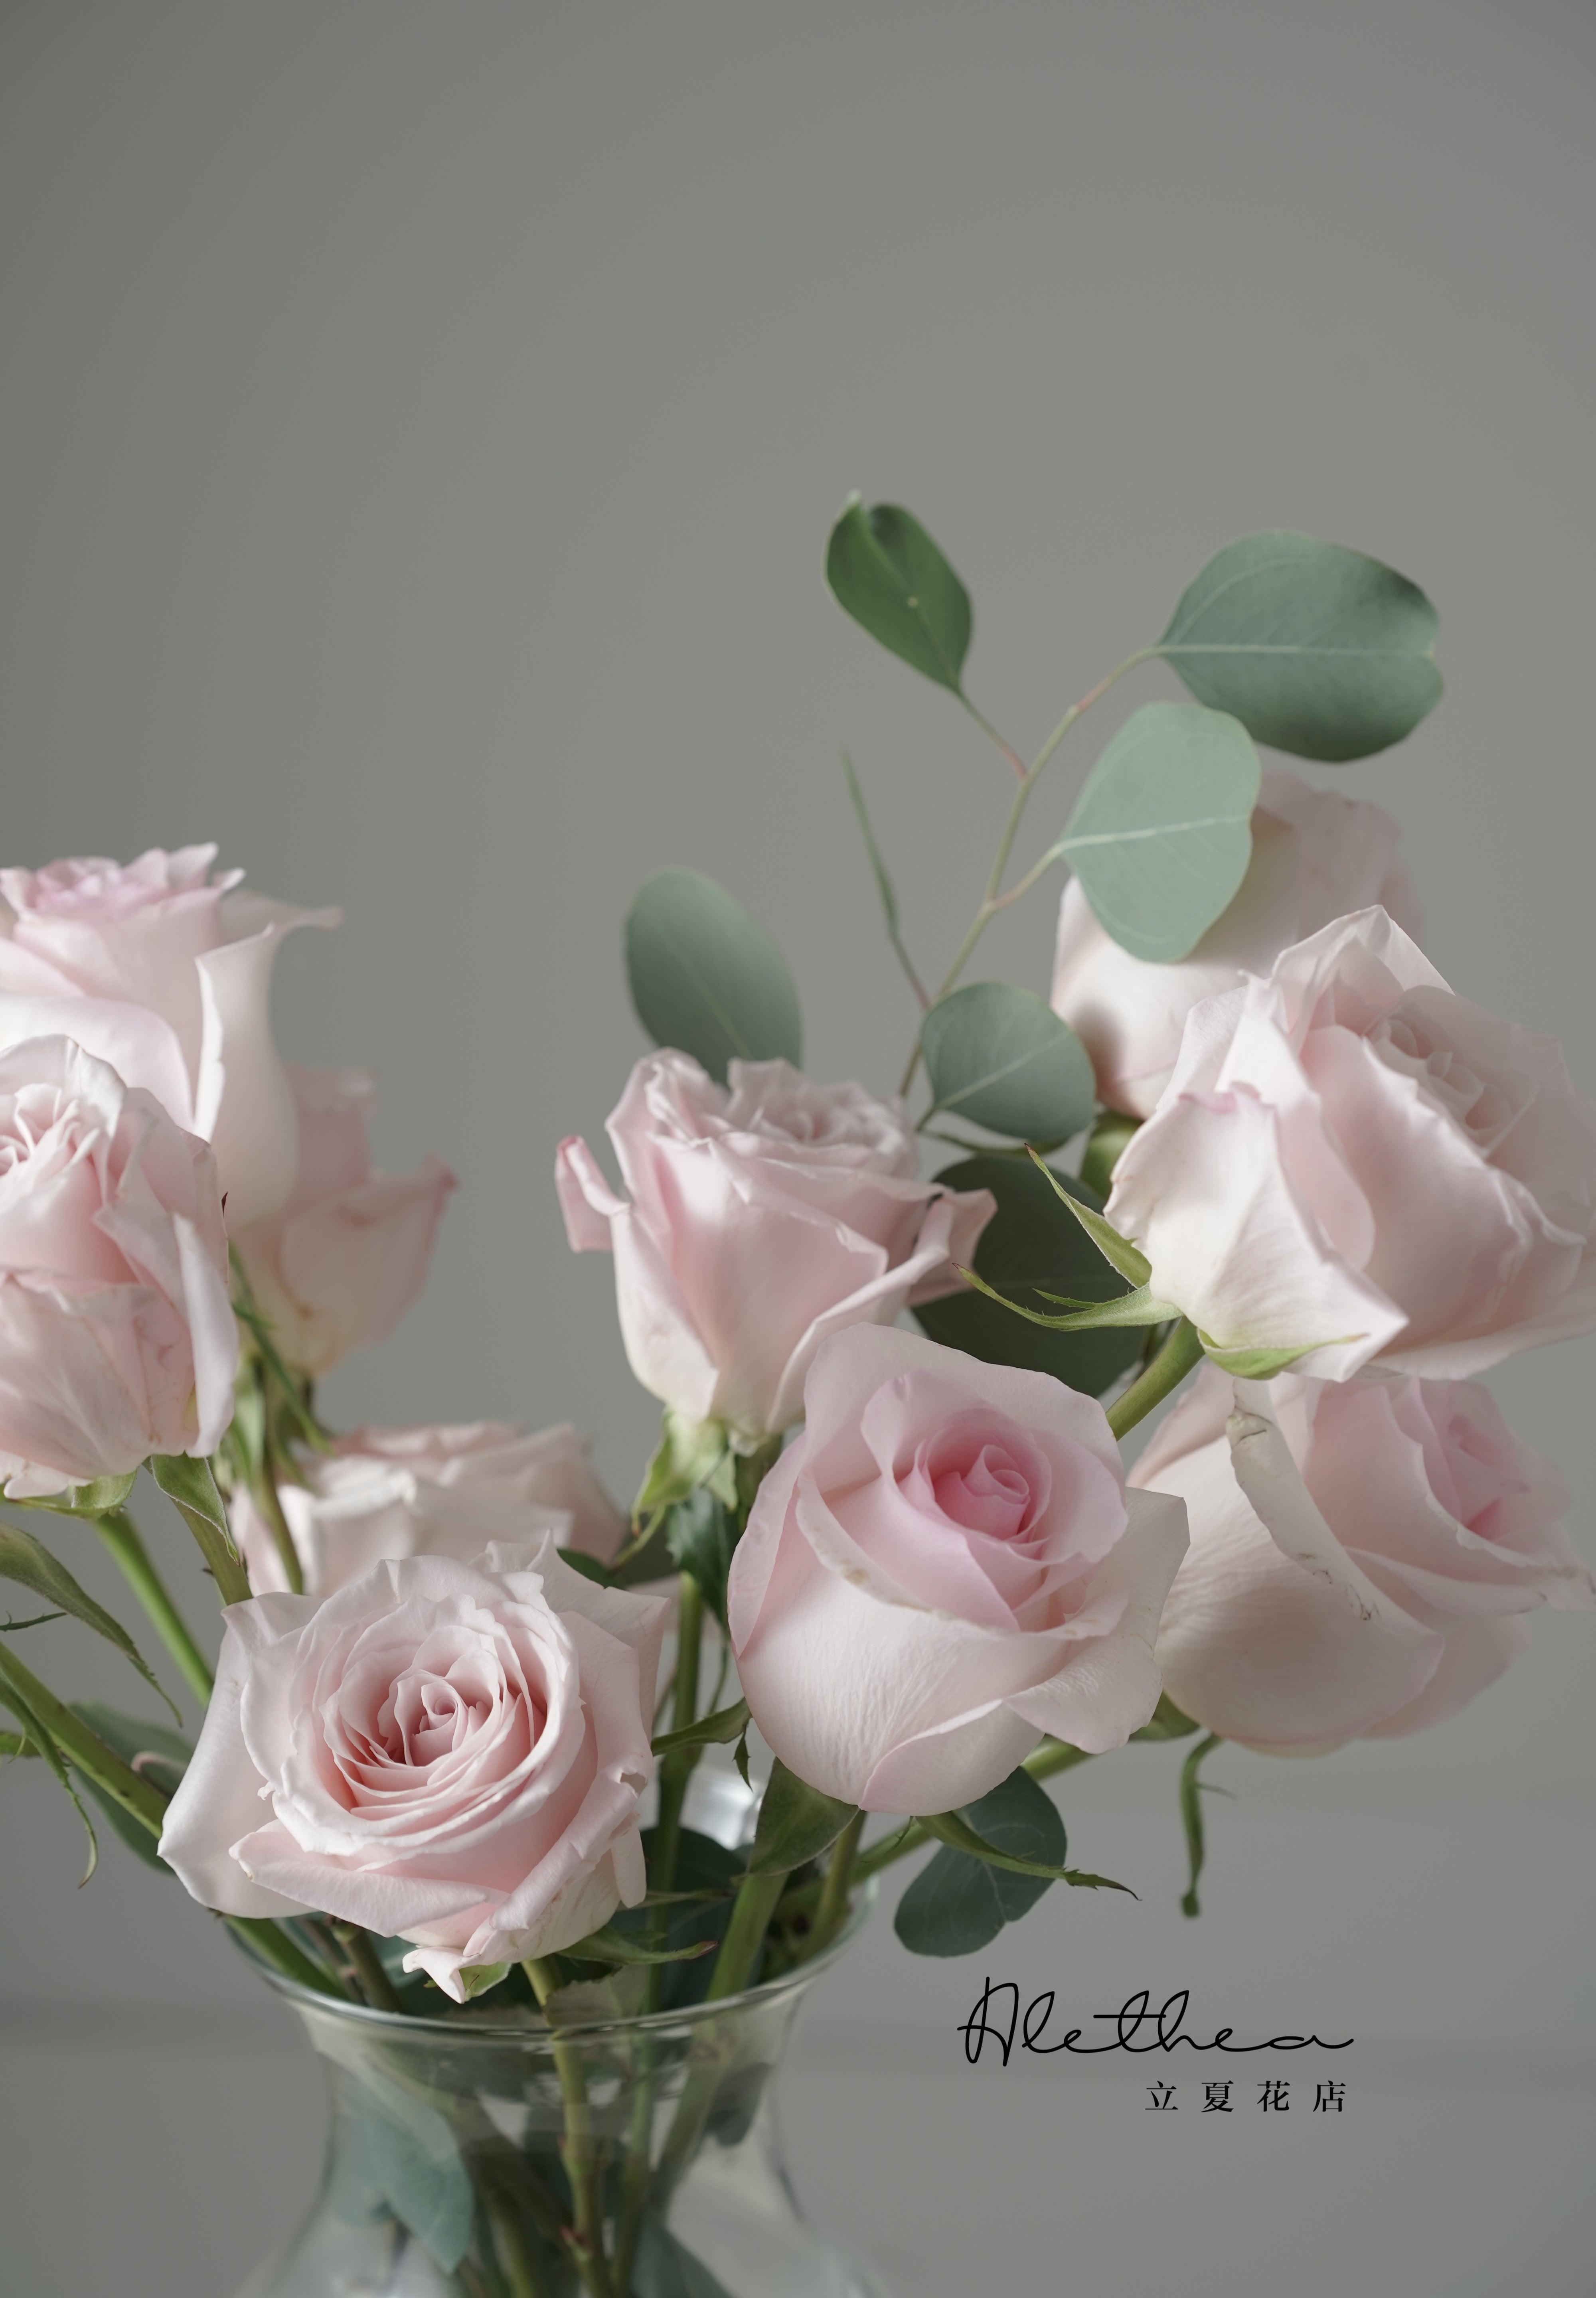 Alethea Rose Vase - Pink - Valentines'Day